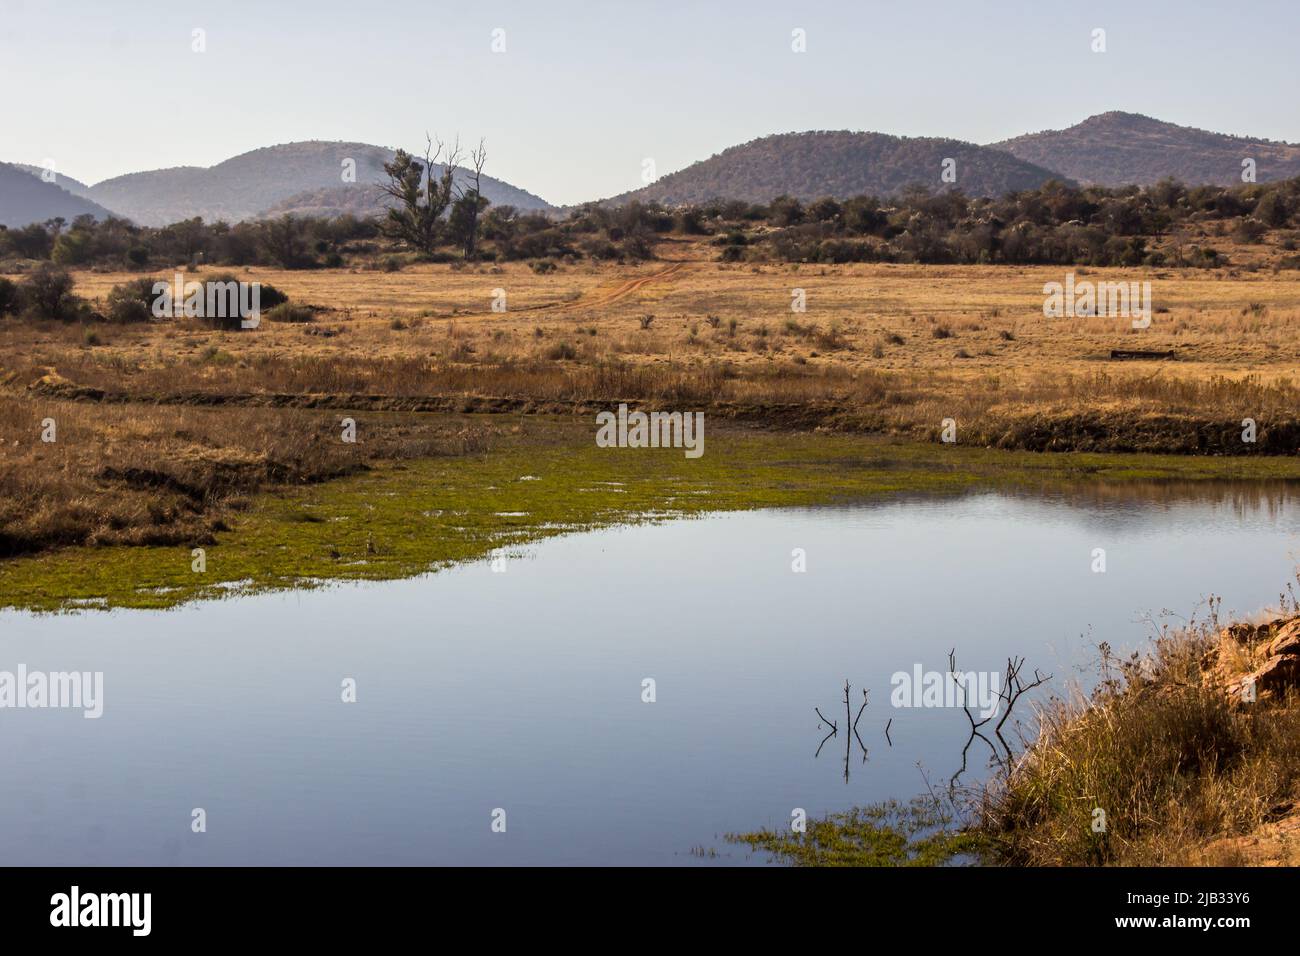 Un petit lac, dans le brousse de l'Afrique du Sud rurale, avec les collines du Vredefort Dome en arrière-plan Banque D'Images